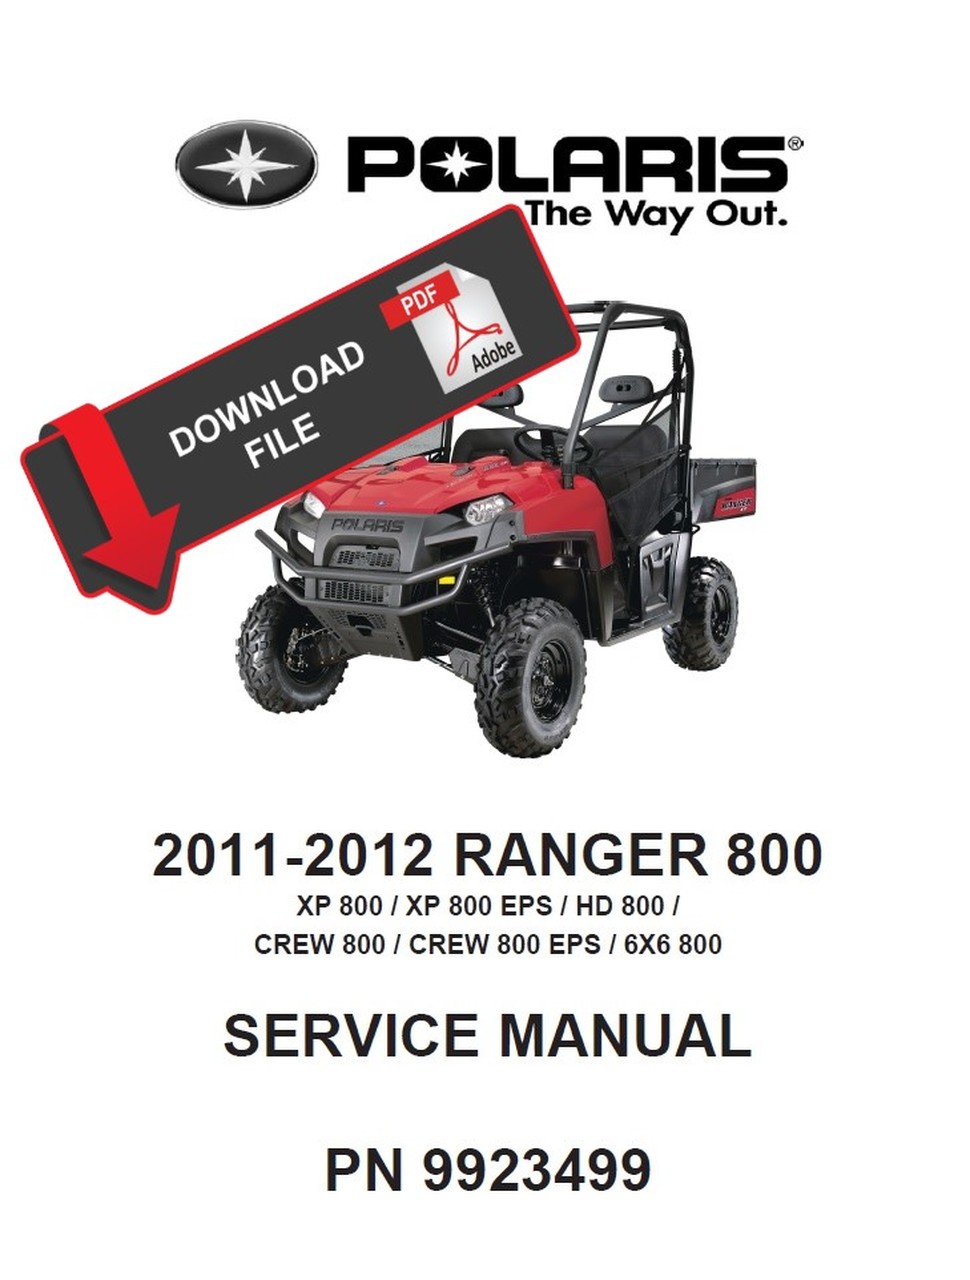 polaris ranger 800 service manual free download